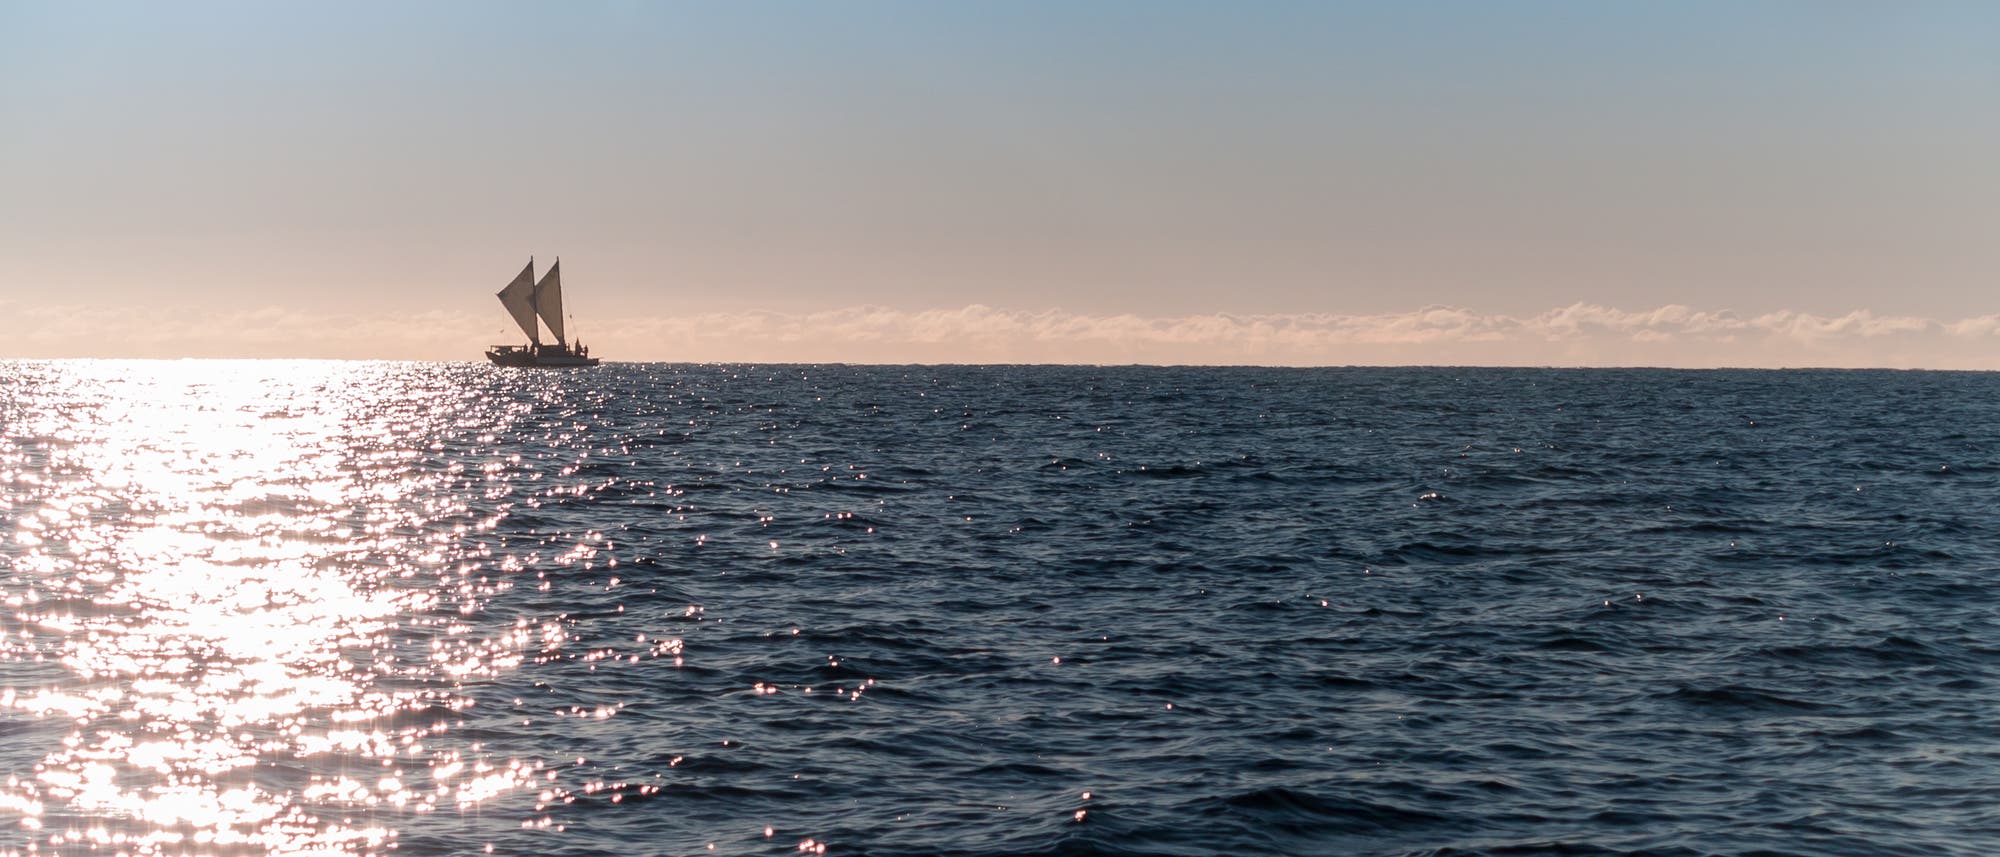 Maori-Segelboot auf dem Meer.